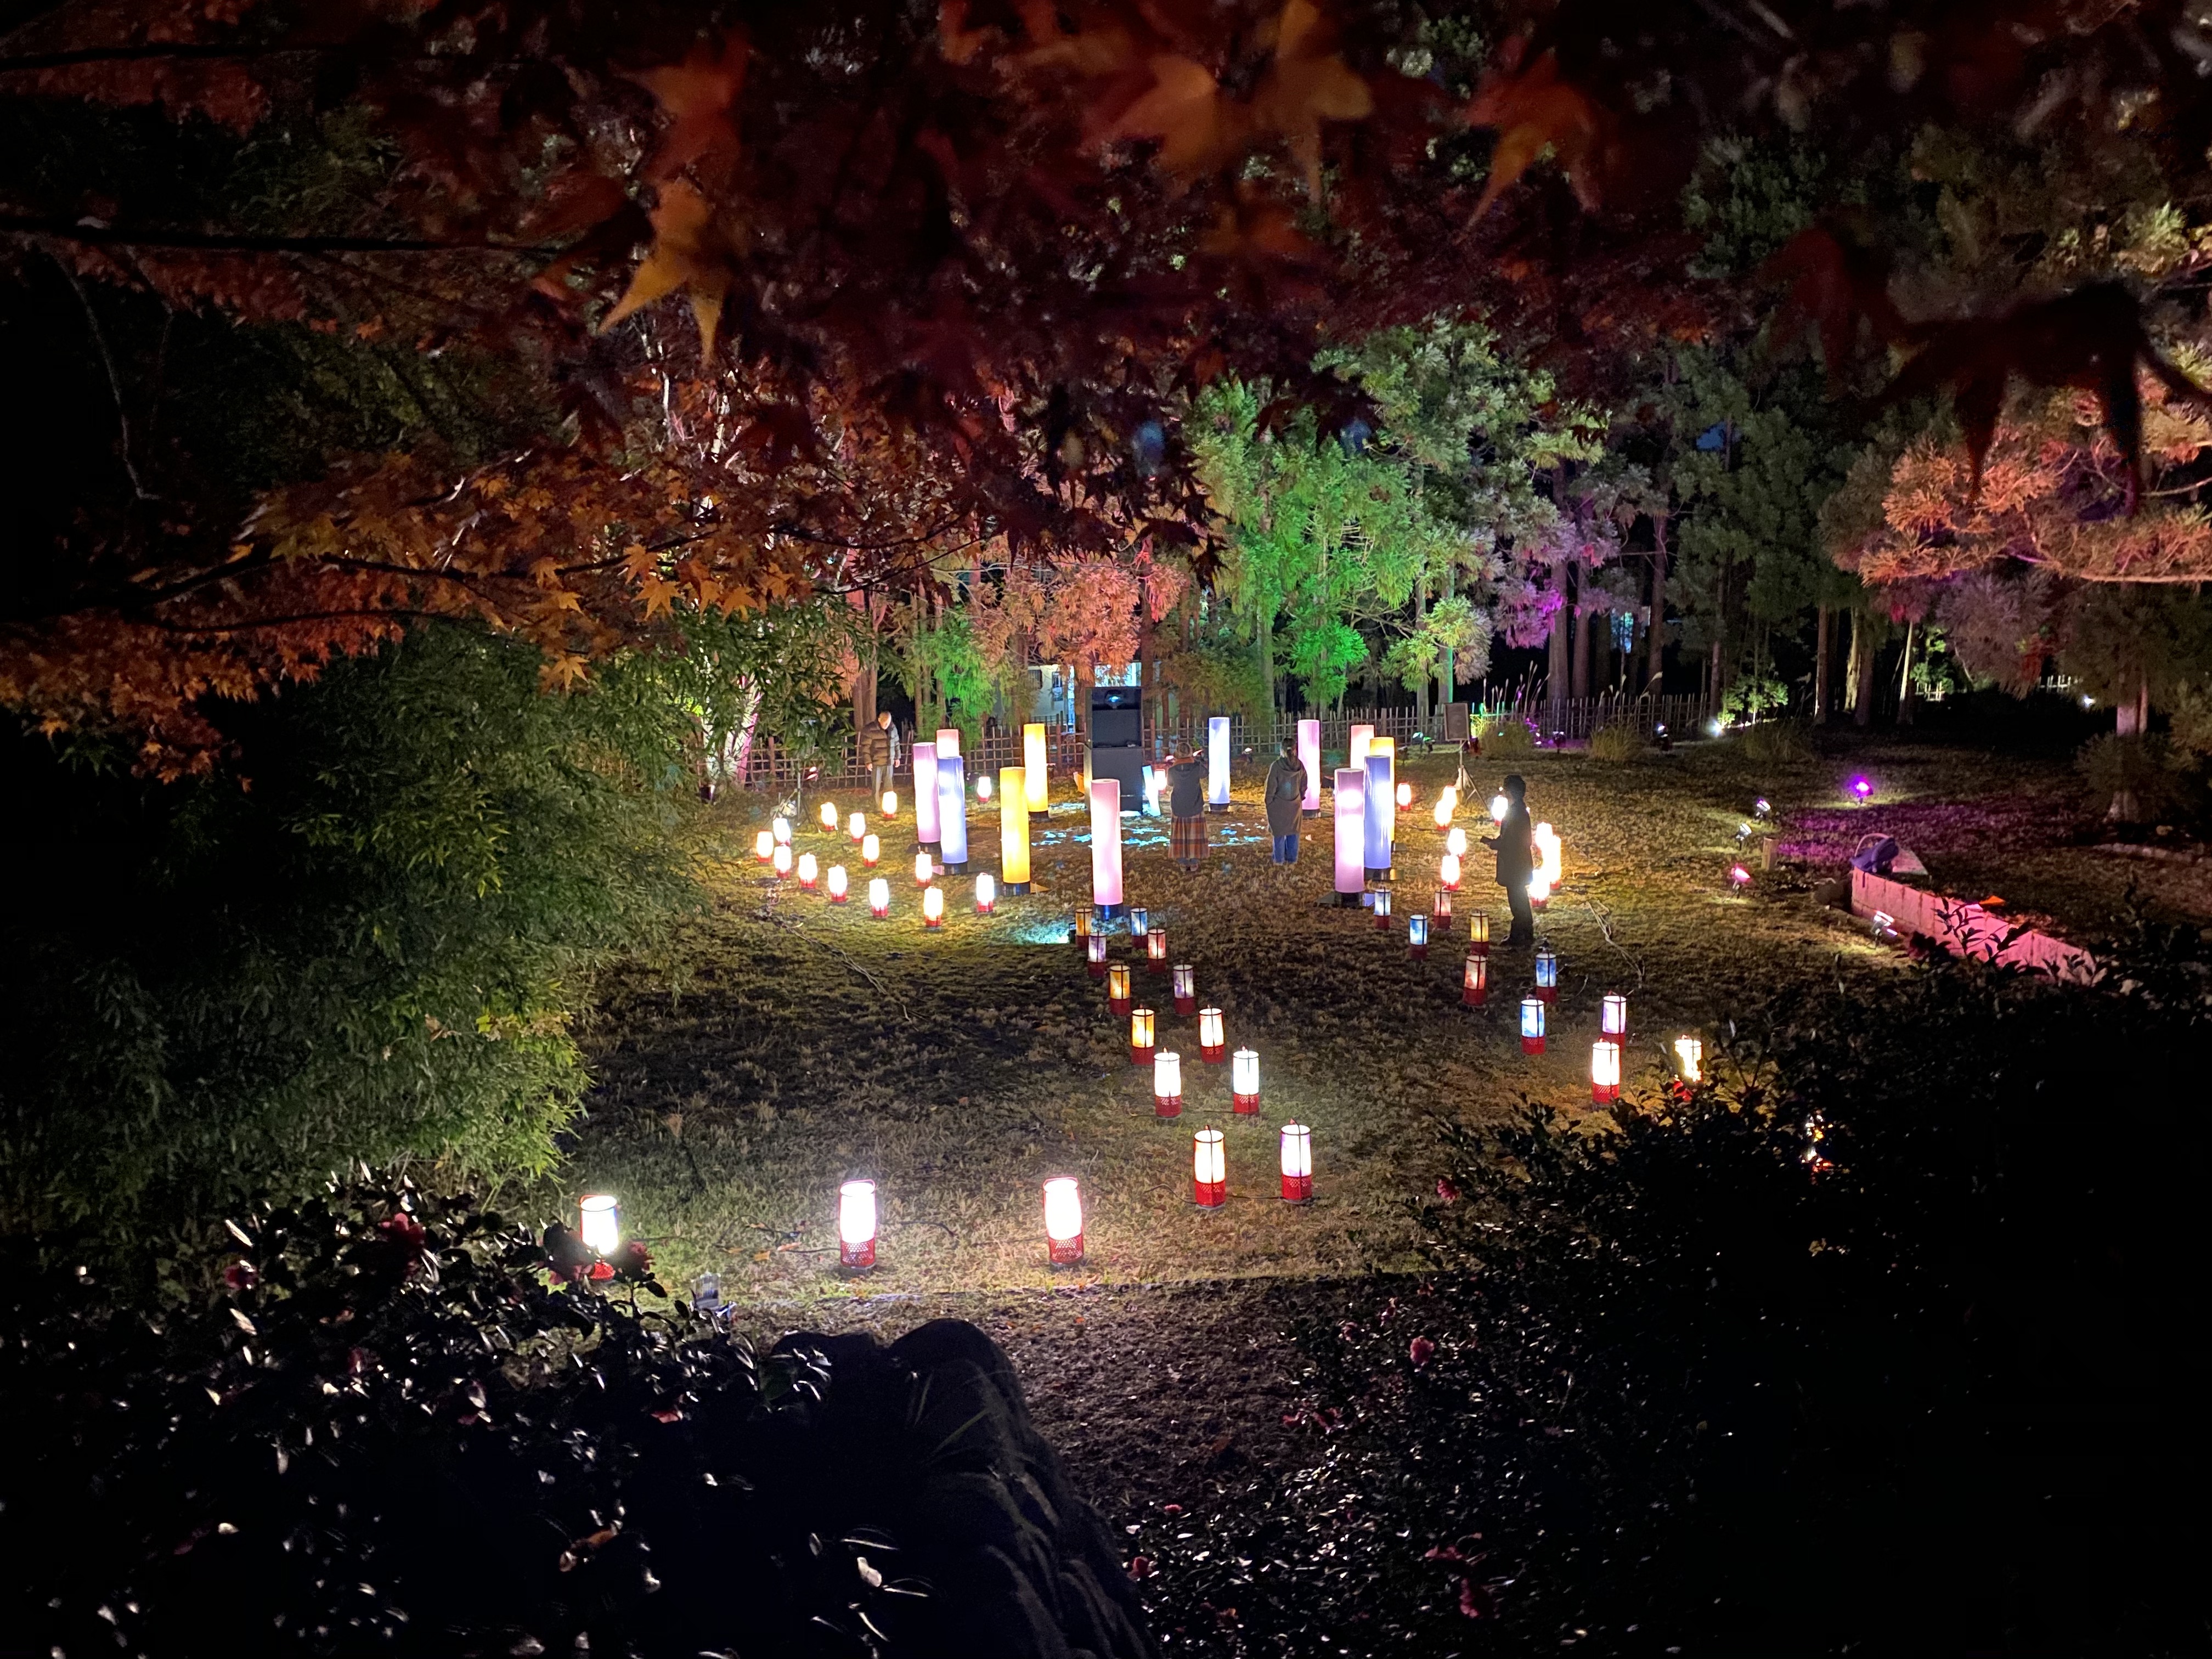 ワントゥーテン 京都 嵐山 花灯路 19にて 小倉百人一首をテーマにしたインスタレーション 四季の灯りと戯れる 歌詠みの杜 を演出 ワントゥーテンのプレスリリース